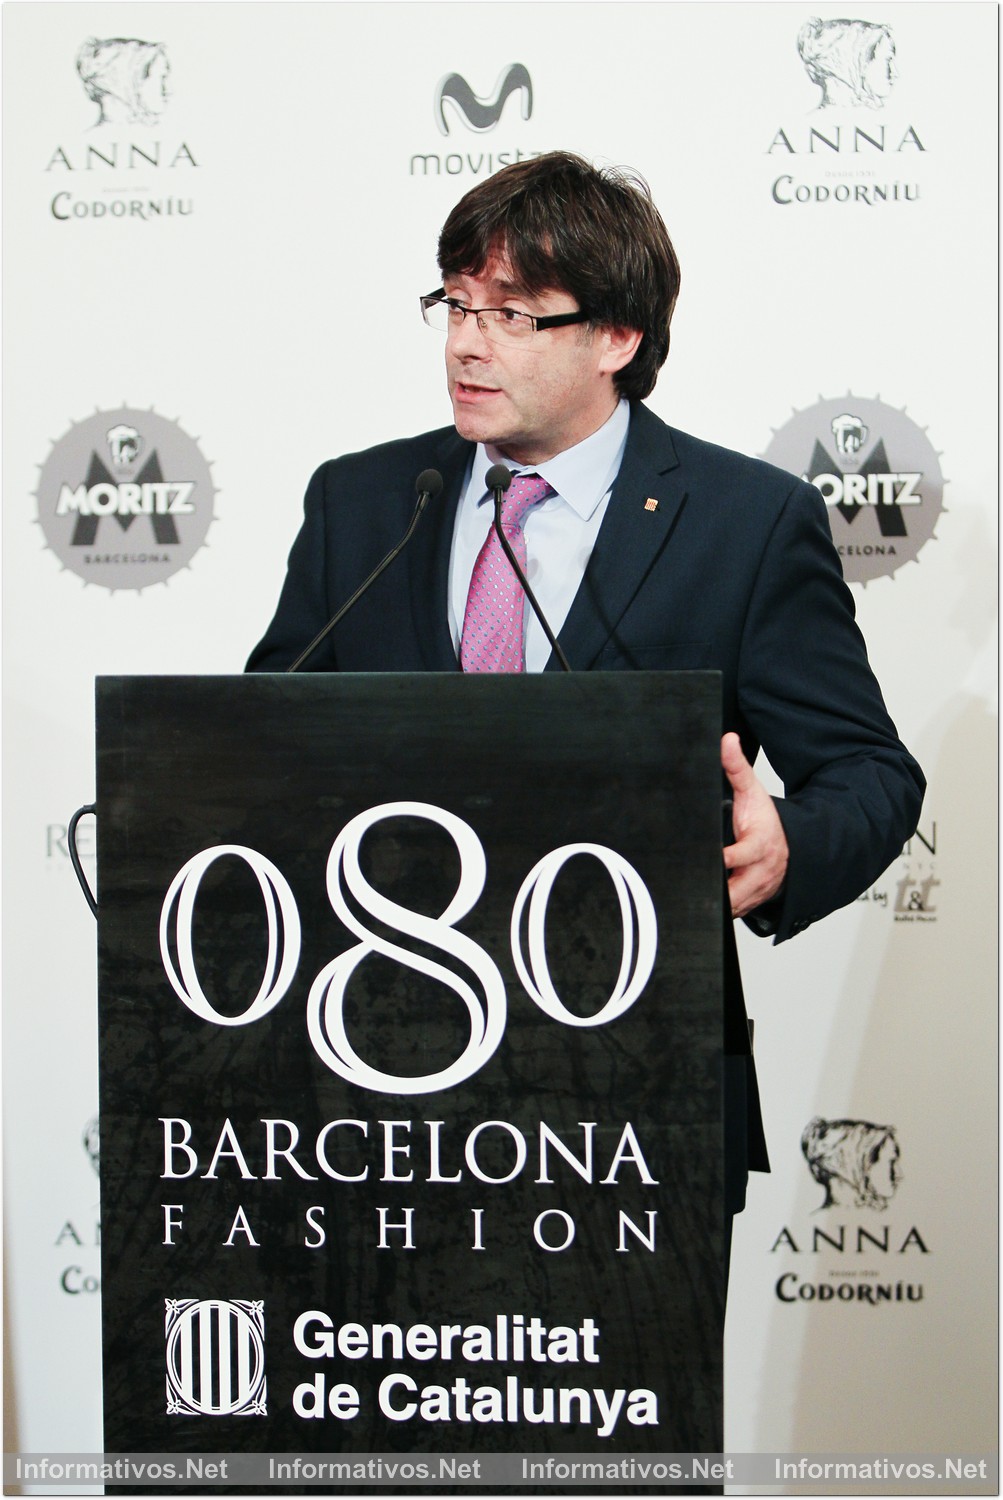 BCN·FEB016.- Barcelona 080 Fashion. Carles Puigdemont, President de la Generalitat Catalana durante su intervención en el acto de inauguración